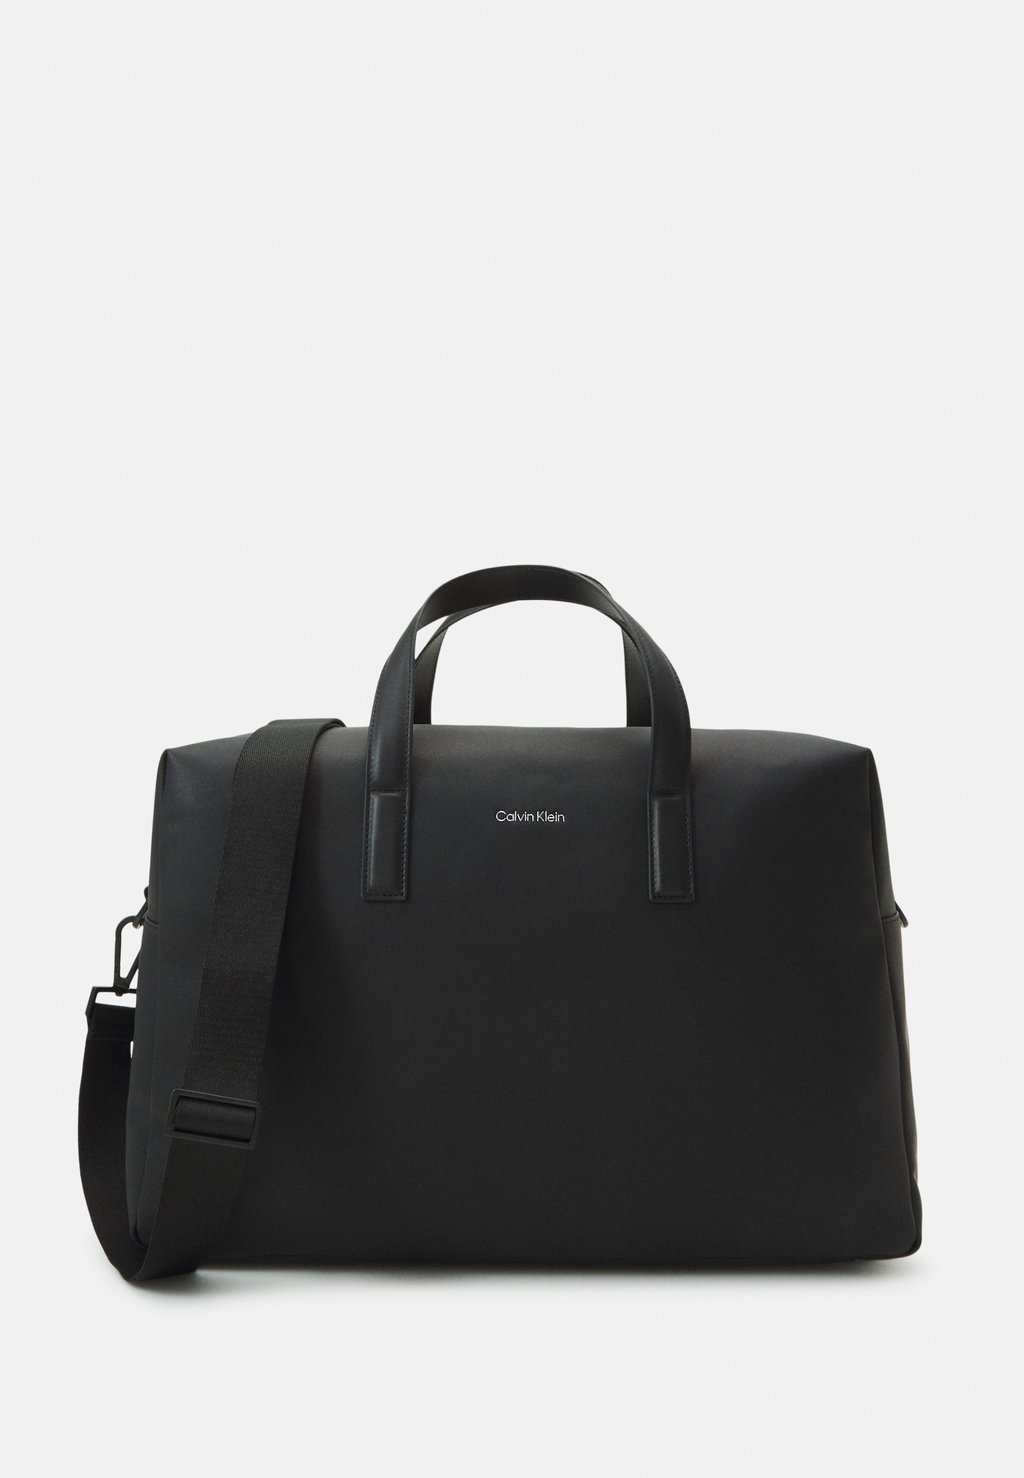 Сумка Weekender MUST Calvin Klein, цвет black сумка weekender ck must weekender mono calvin klein цвет classic mono black